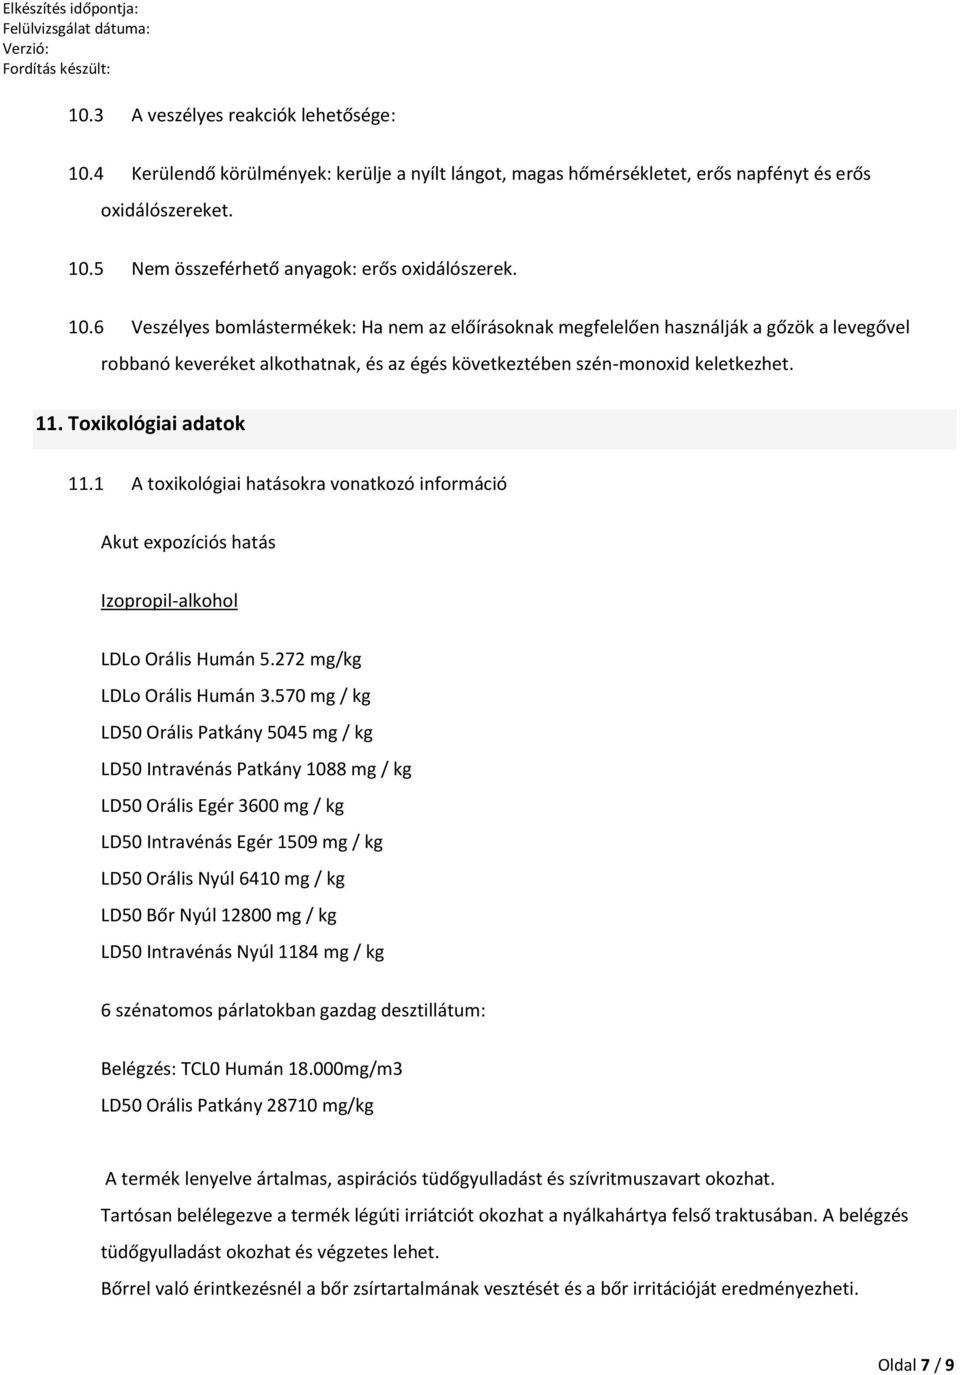 Toxikológiai adatok 11.1 A toxikológiai hatásokra vonatkozó információ Akut expozíciós hatás Izopropil-alkohol LDLo Orális Humán 5.272 mg/kg LDLo Orális Humán 3.